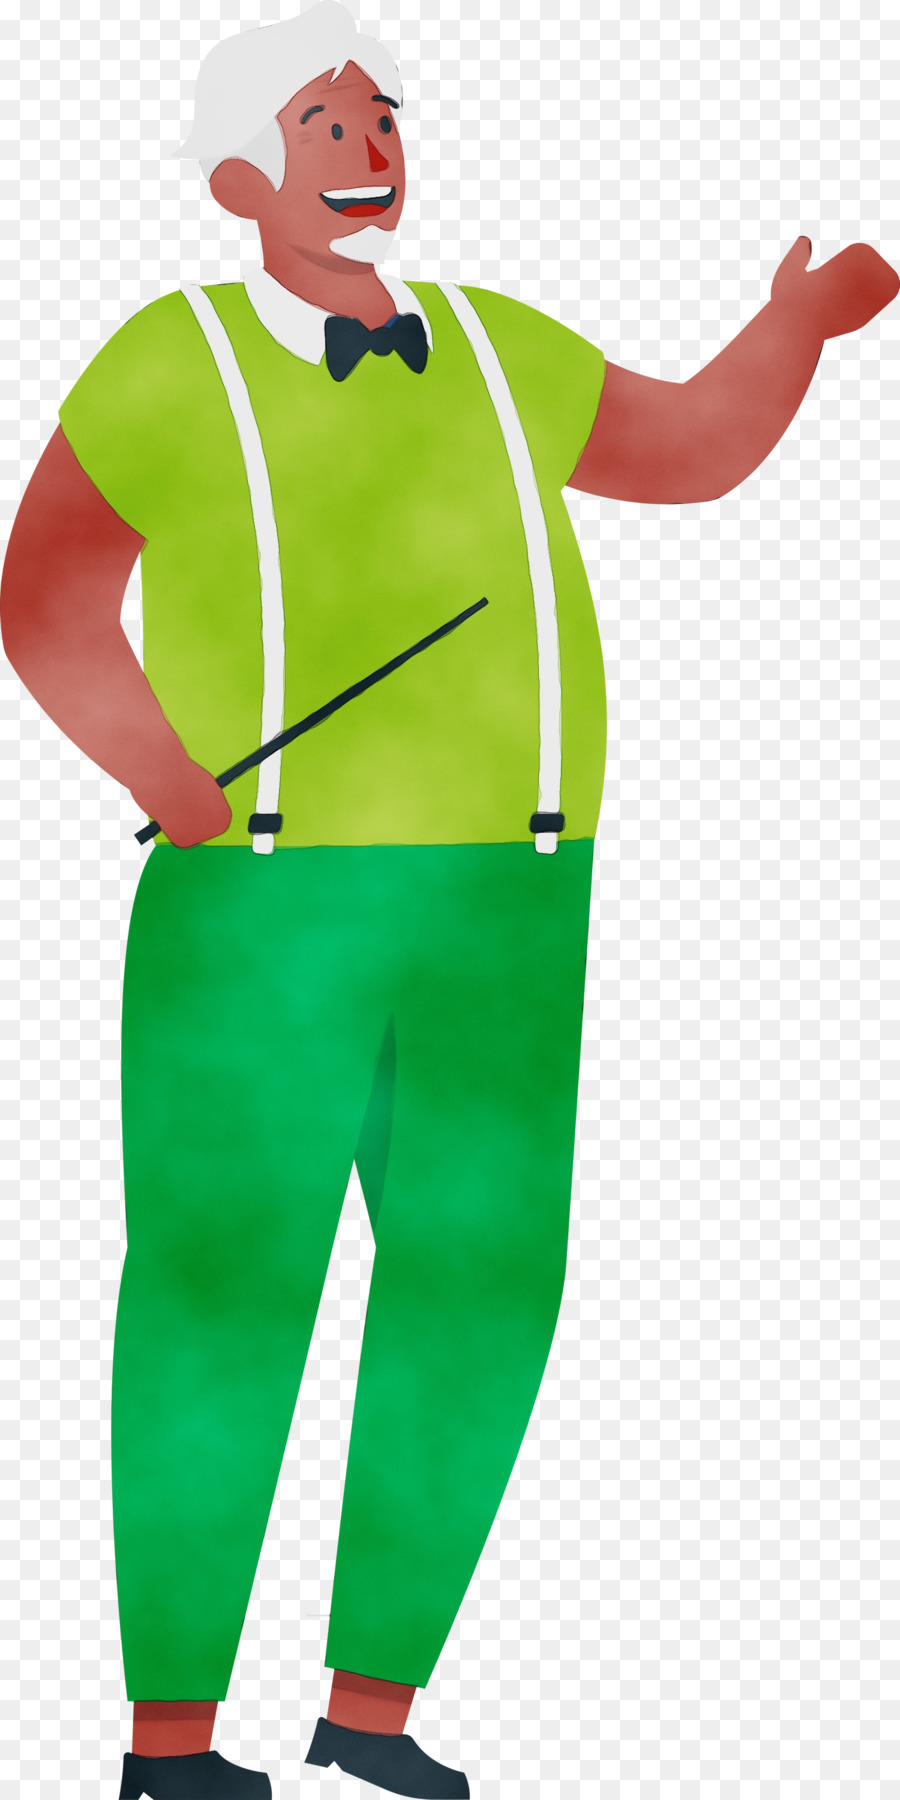 costume green clown character headgear